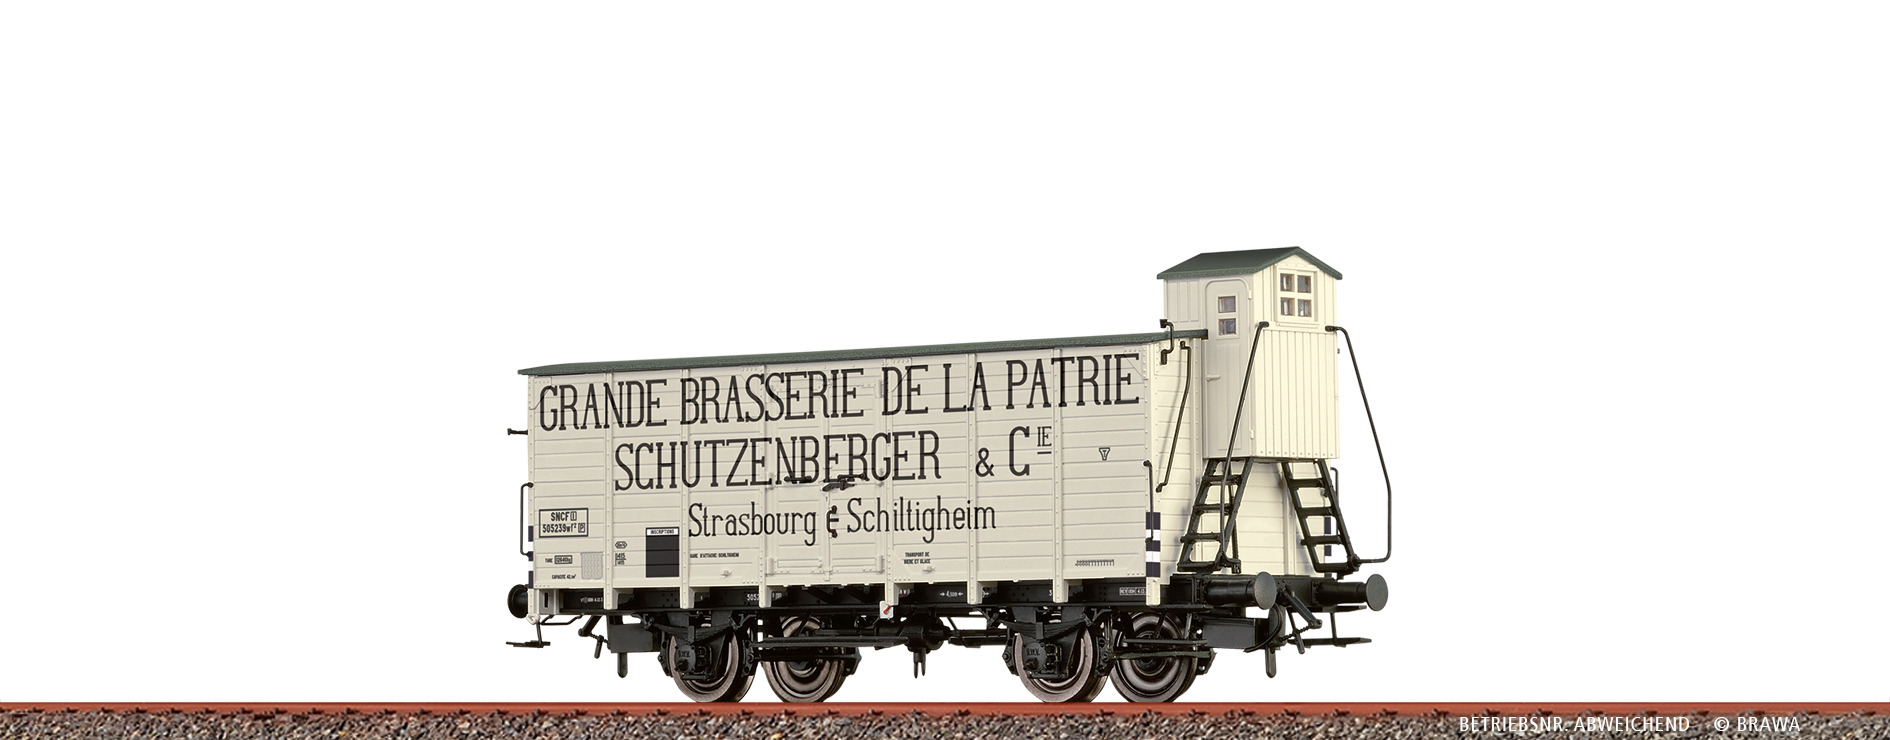 H0 GÜW SNCF III Schutzenberge H0 Bierwagen SNCF, III, Schutzenberger